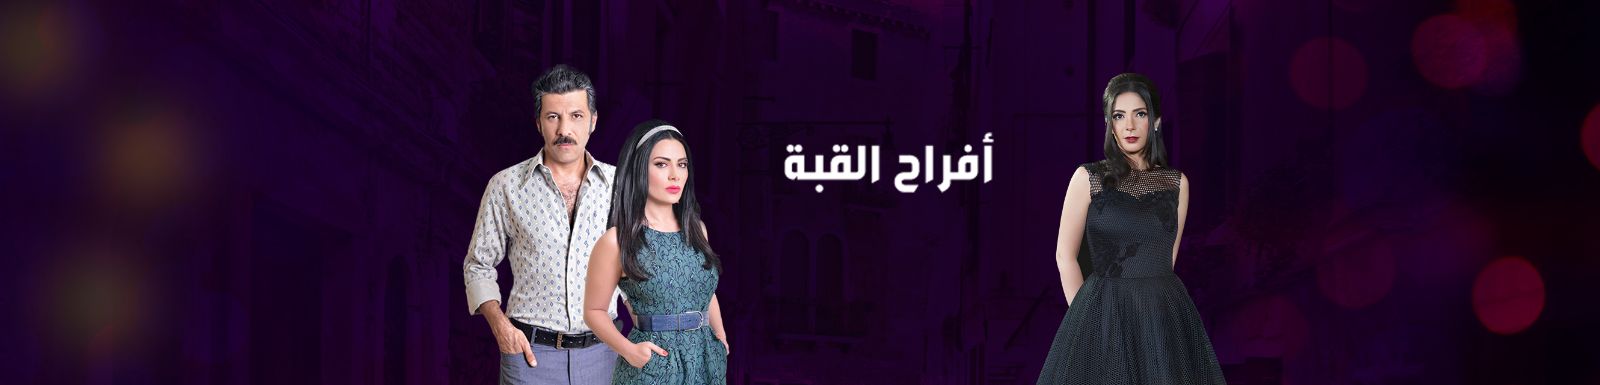 قصة وأحداث مسلسل أفراح القبة رمضان 2016 على قناة mbc